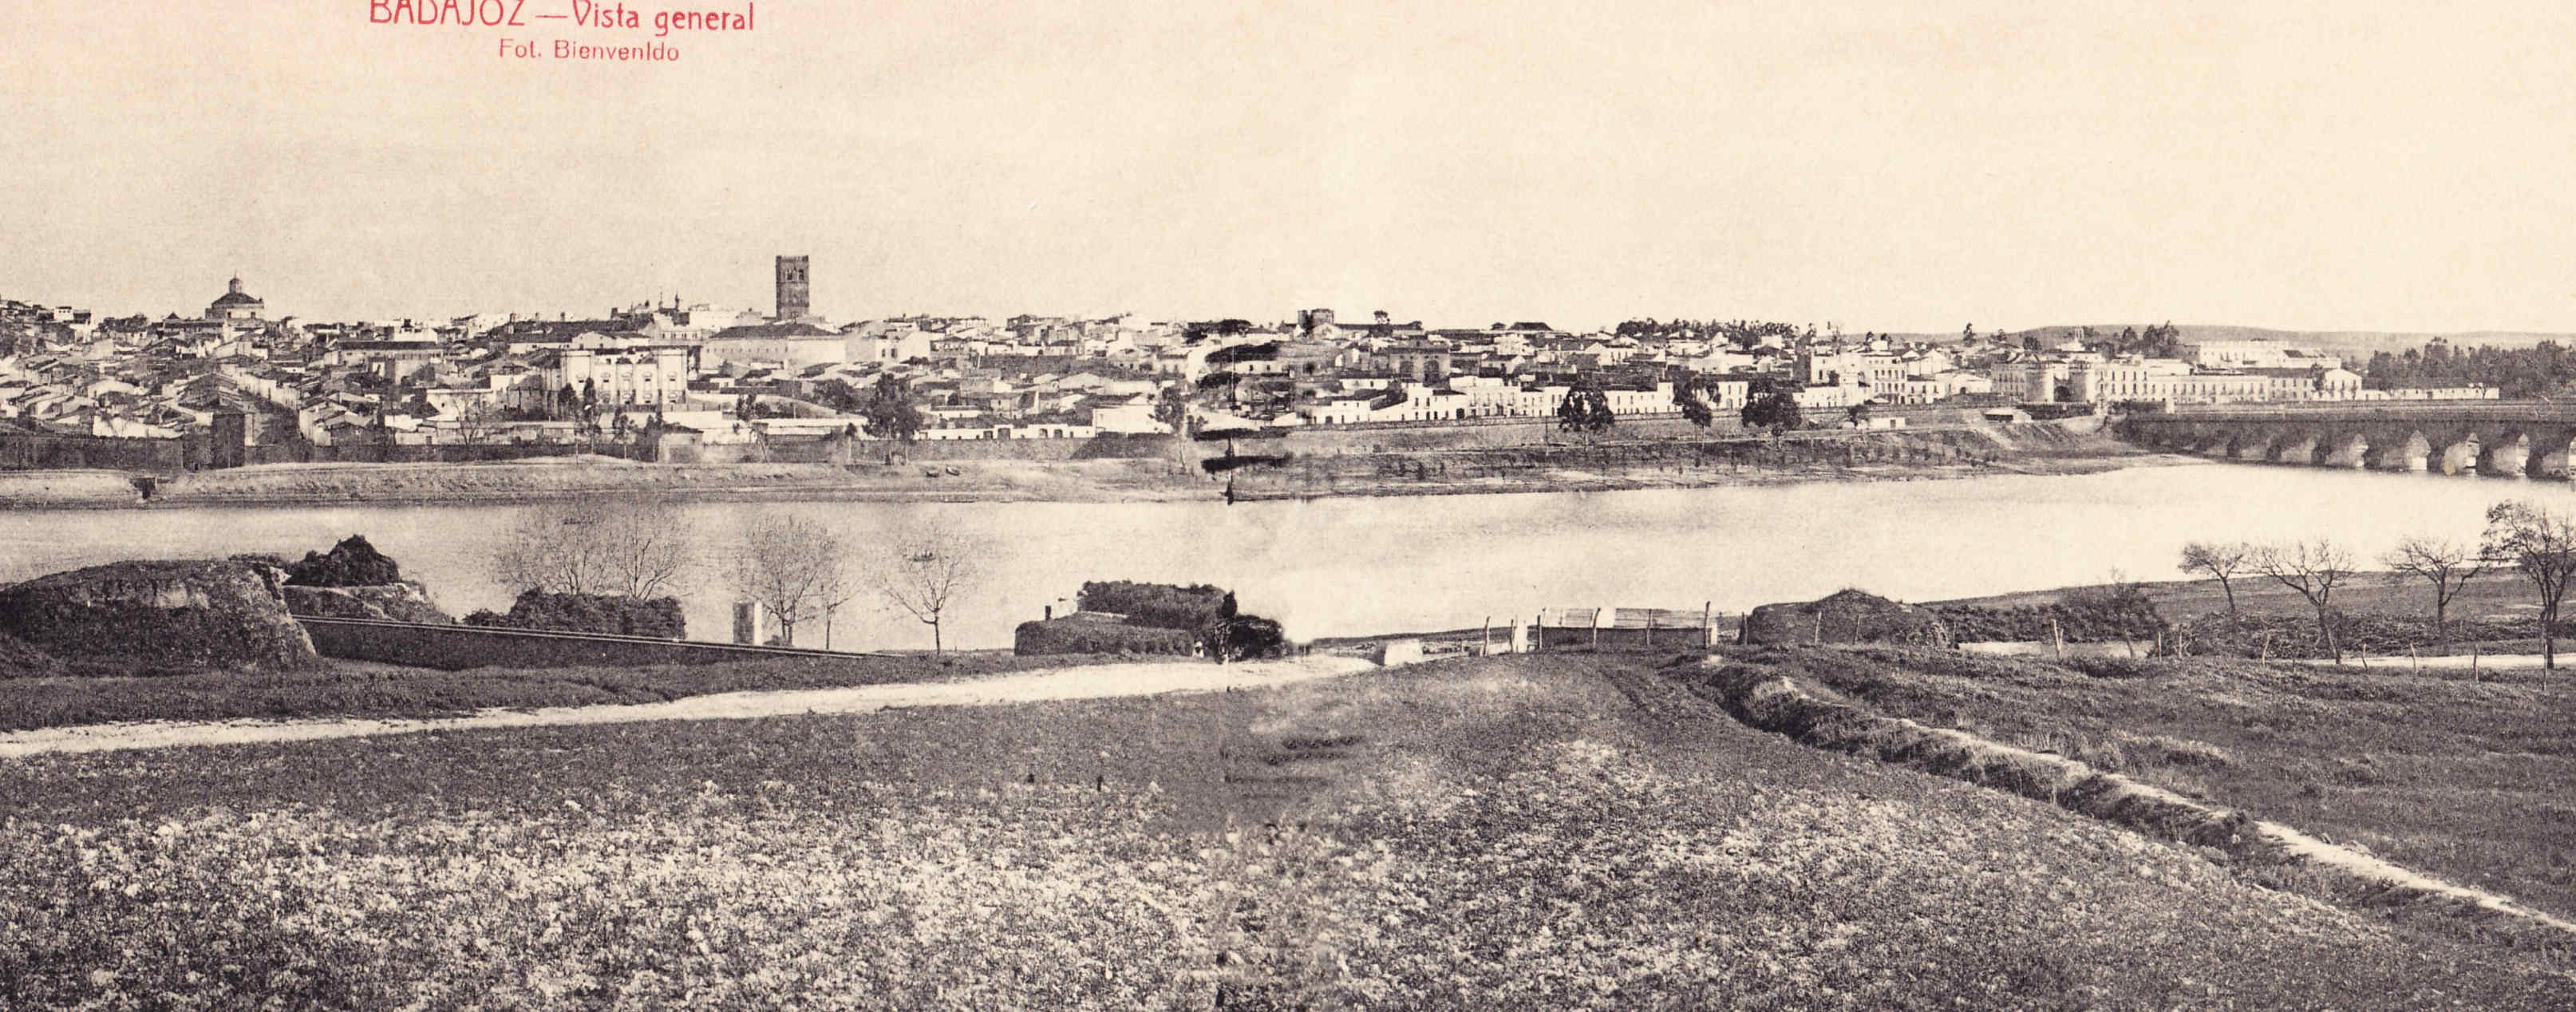 Badajoz Sus murallas a principios del siglo XX